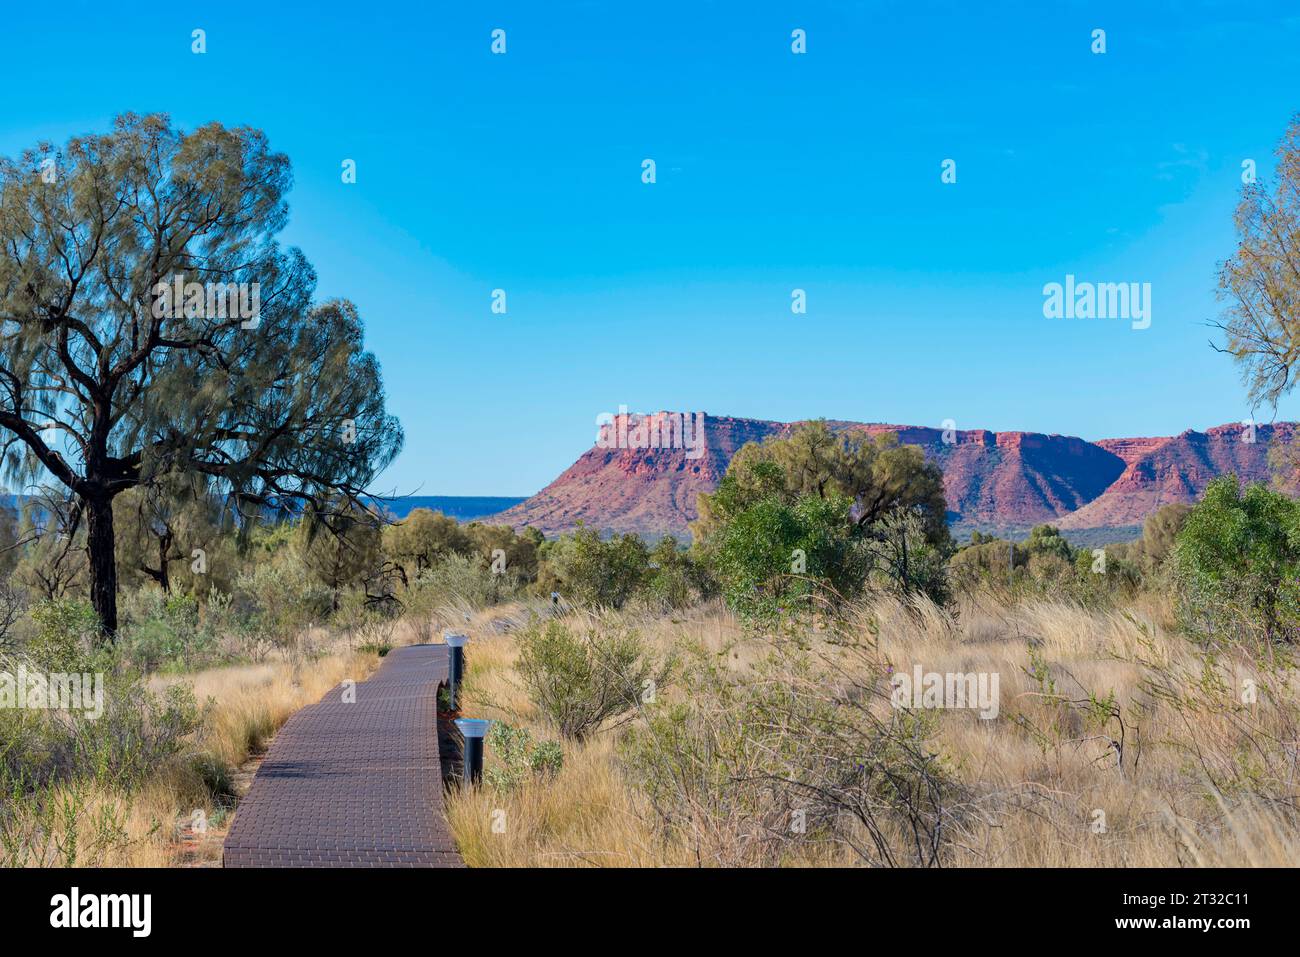 Eine erhöhte Promenade zum Schutz der einheimischen Gräser und Vegetation in der Nähe des Kings Canyon (Watarrka) Resort im Northern Territory von Australien Stockfoto